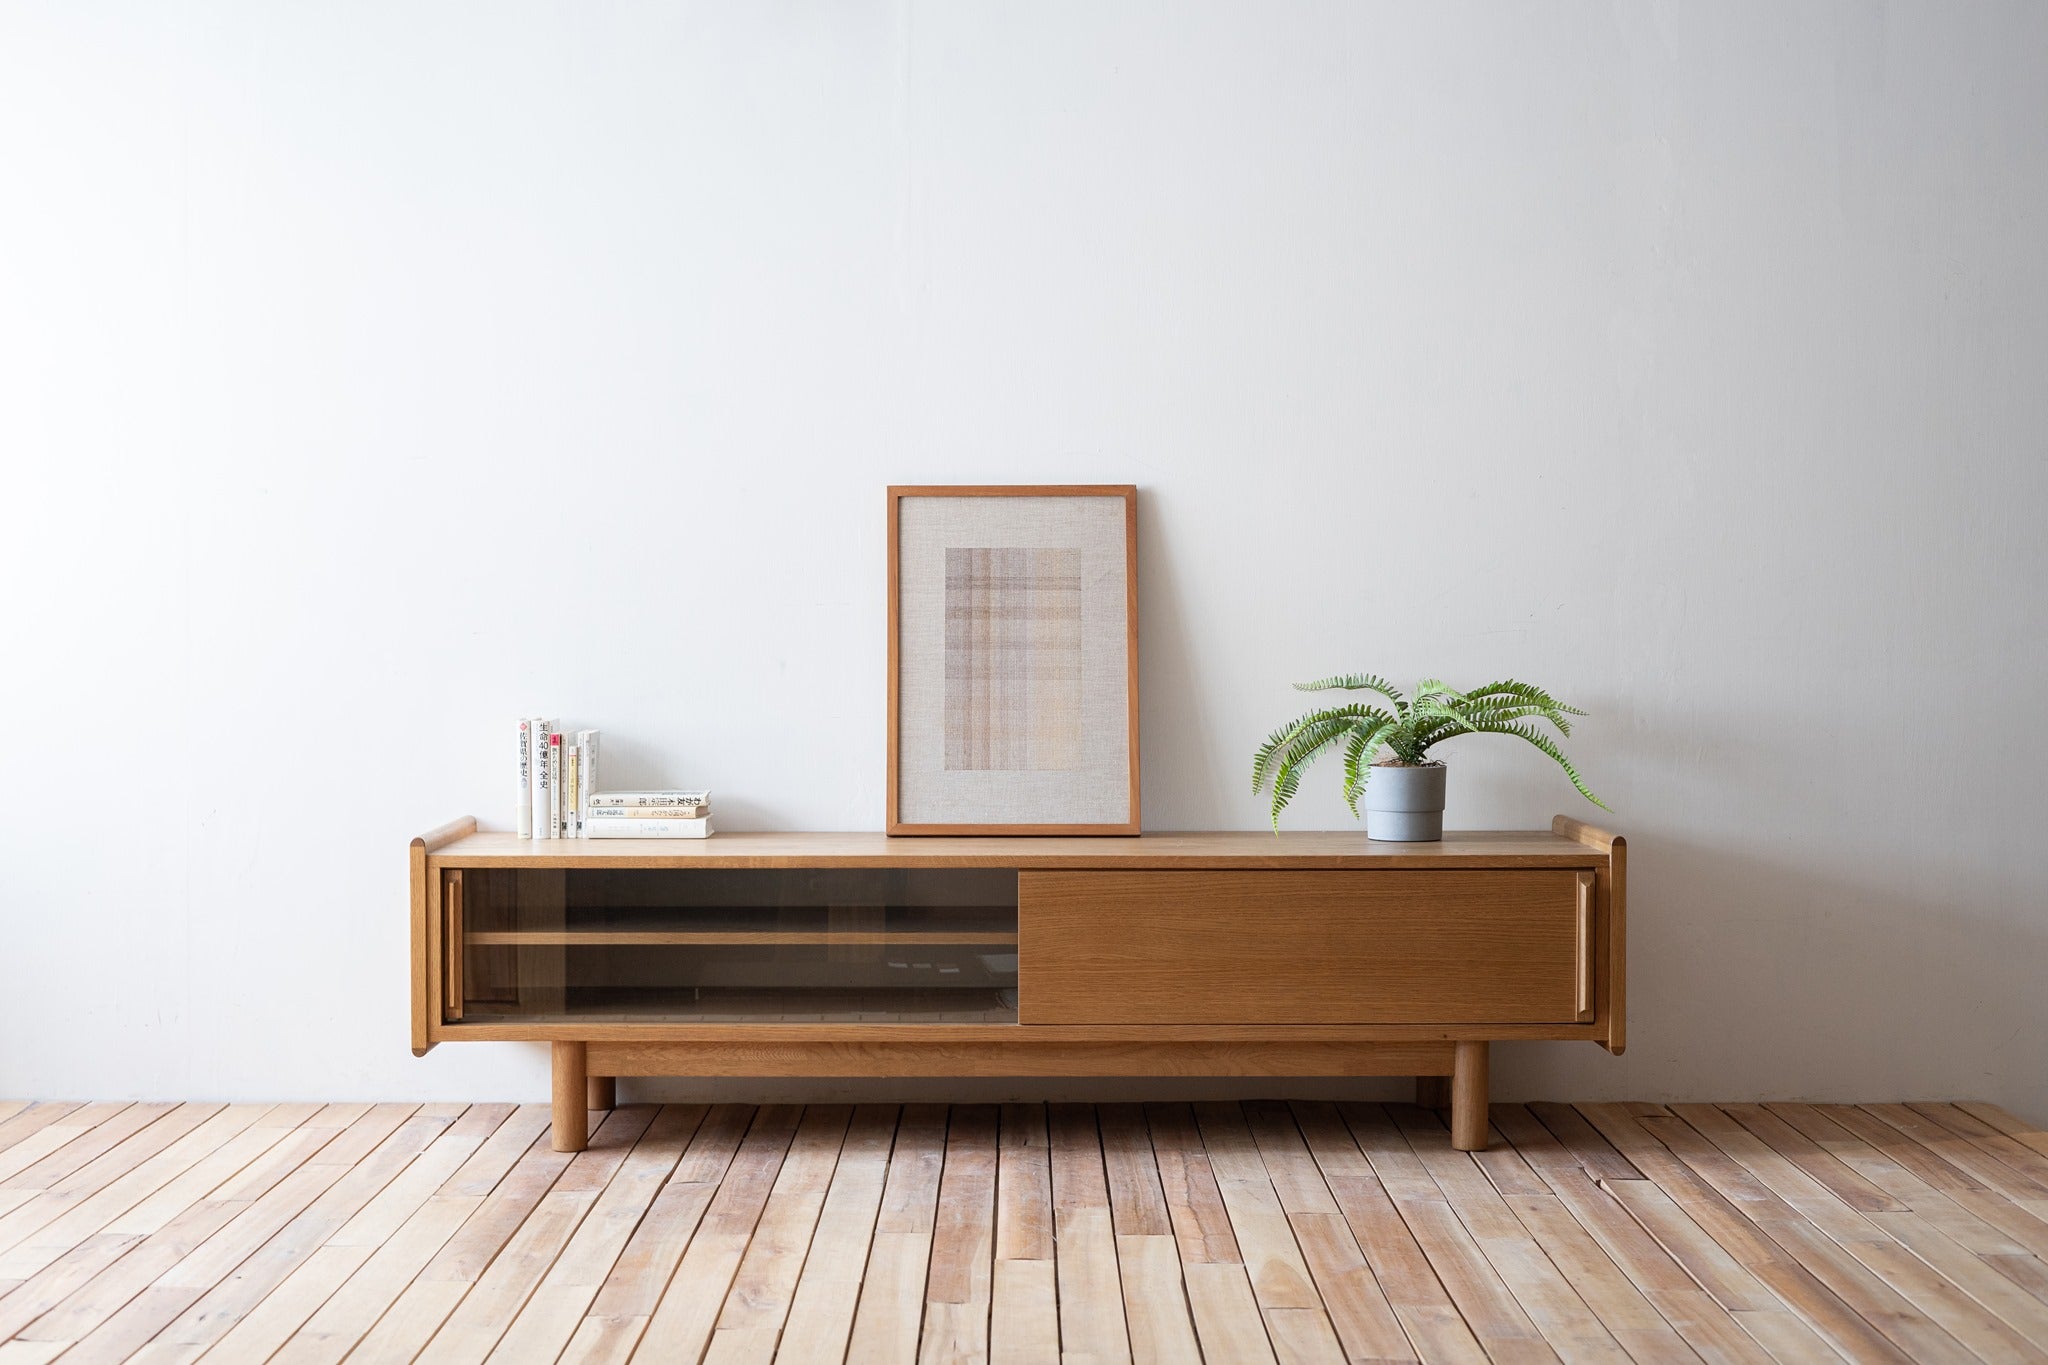 SALA原木電視櫃木紋色彩溫潤，能輕鬆融入各式客廳風格